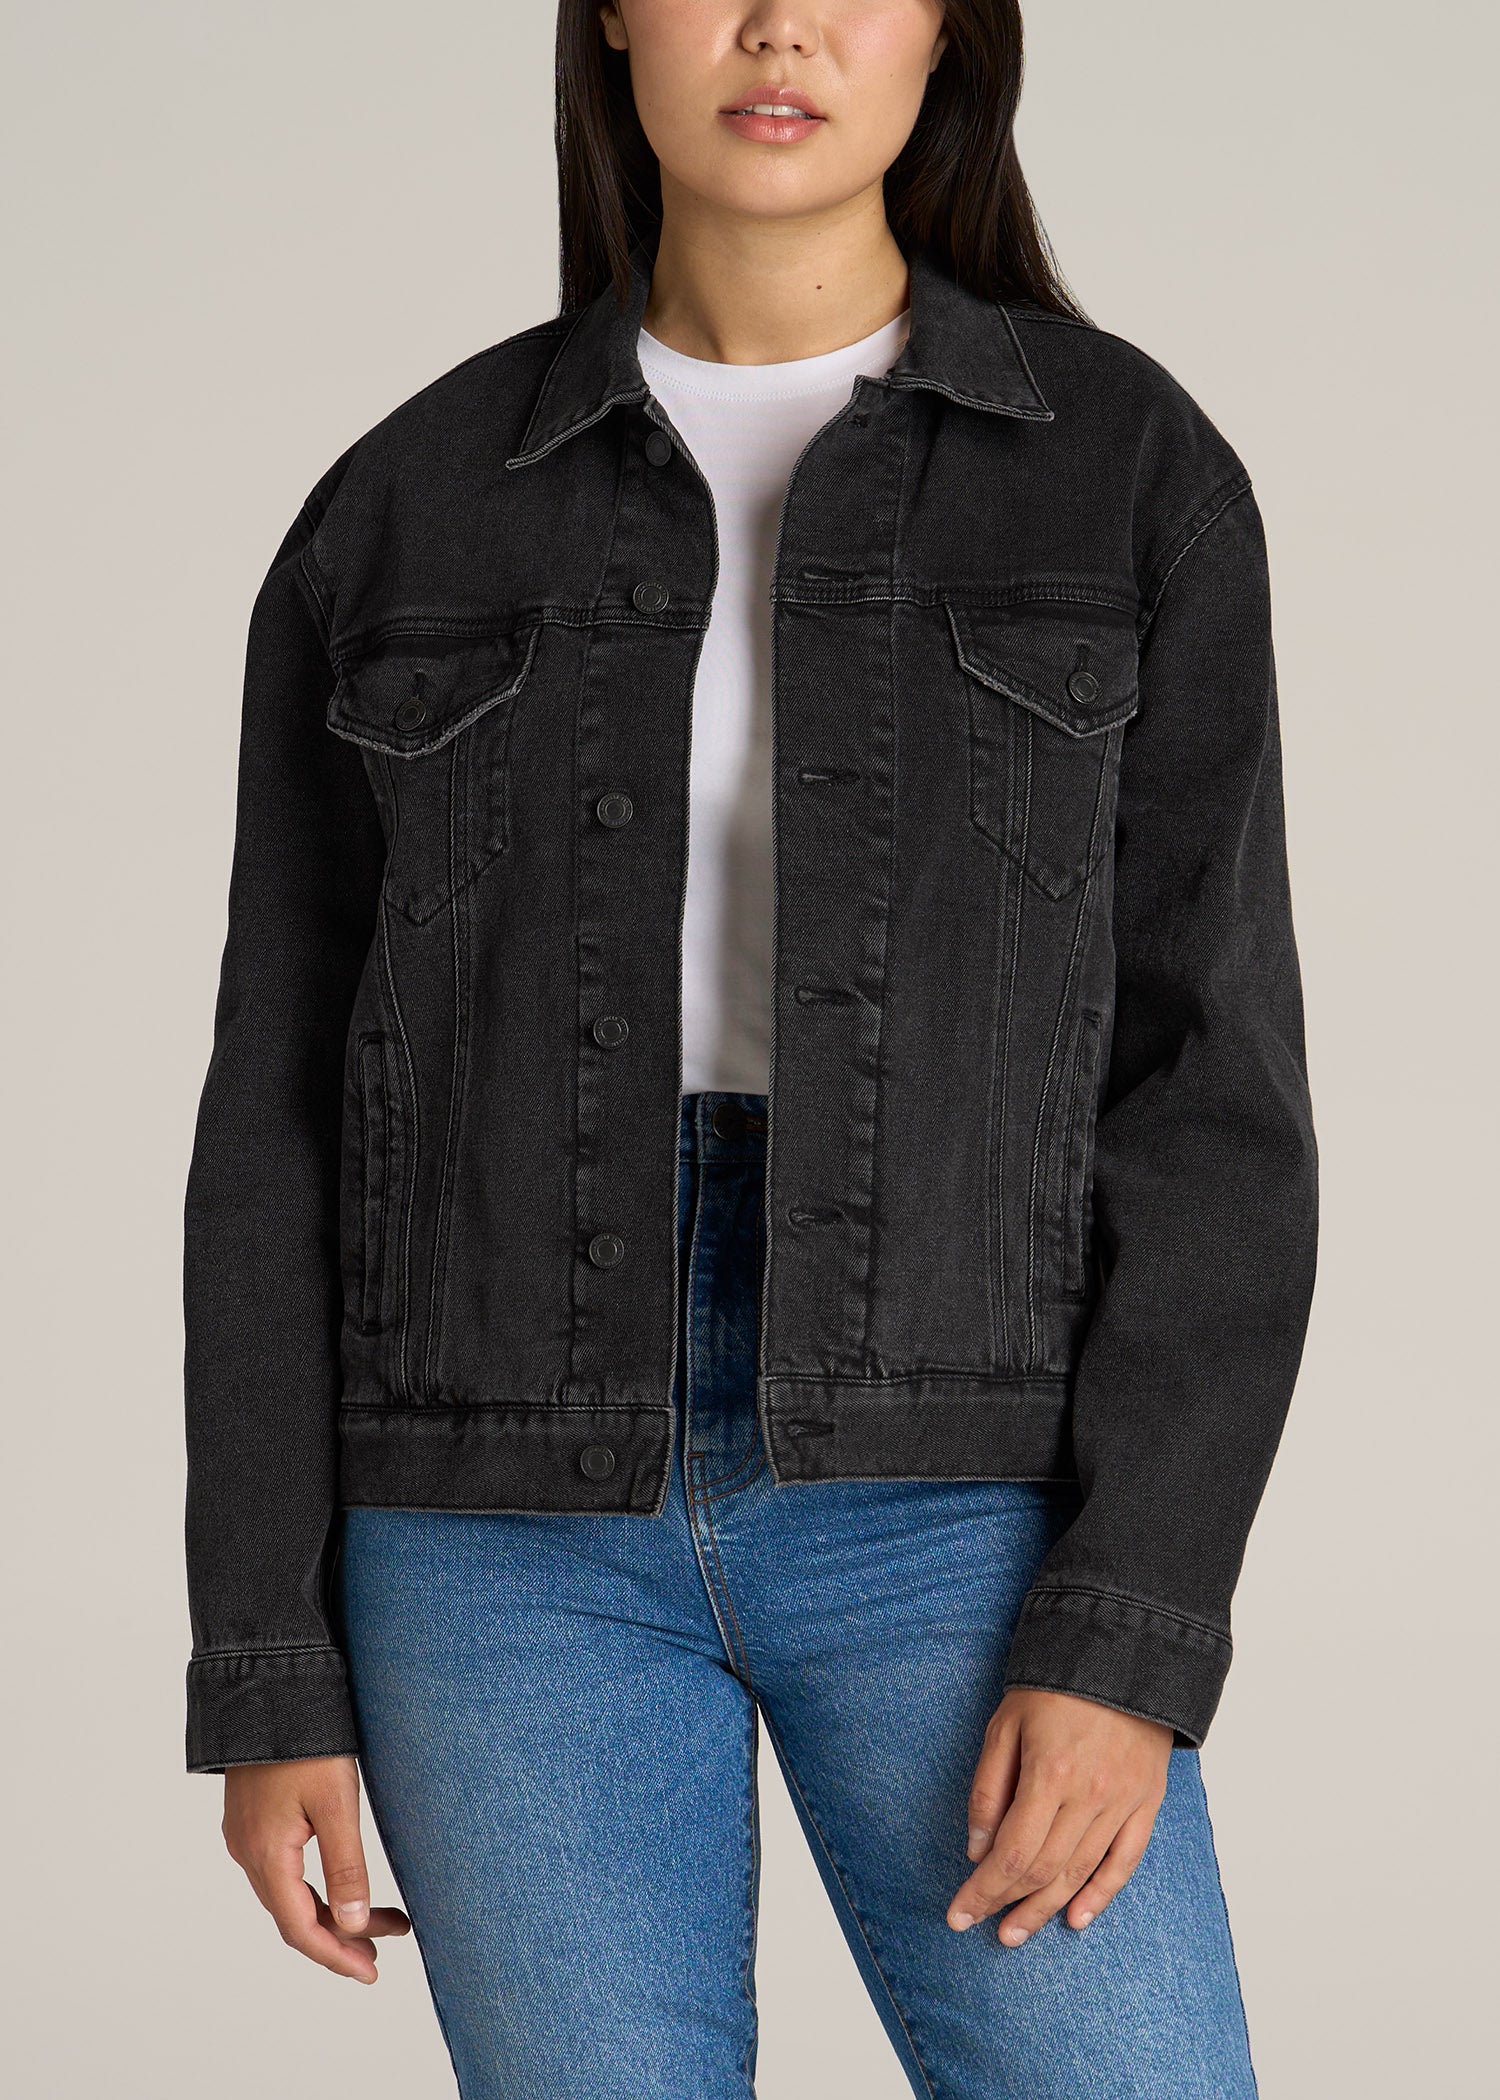 Black Leather Denim Jacket - Rugged & Iconic.